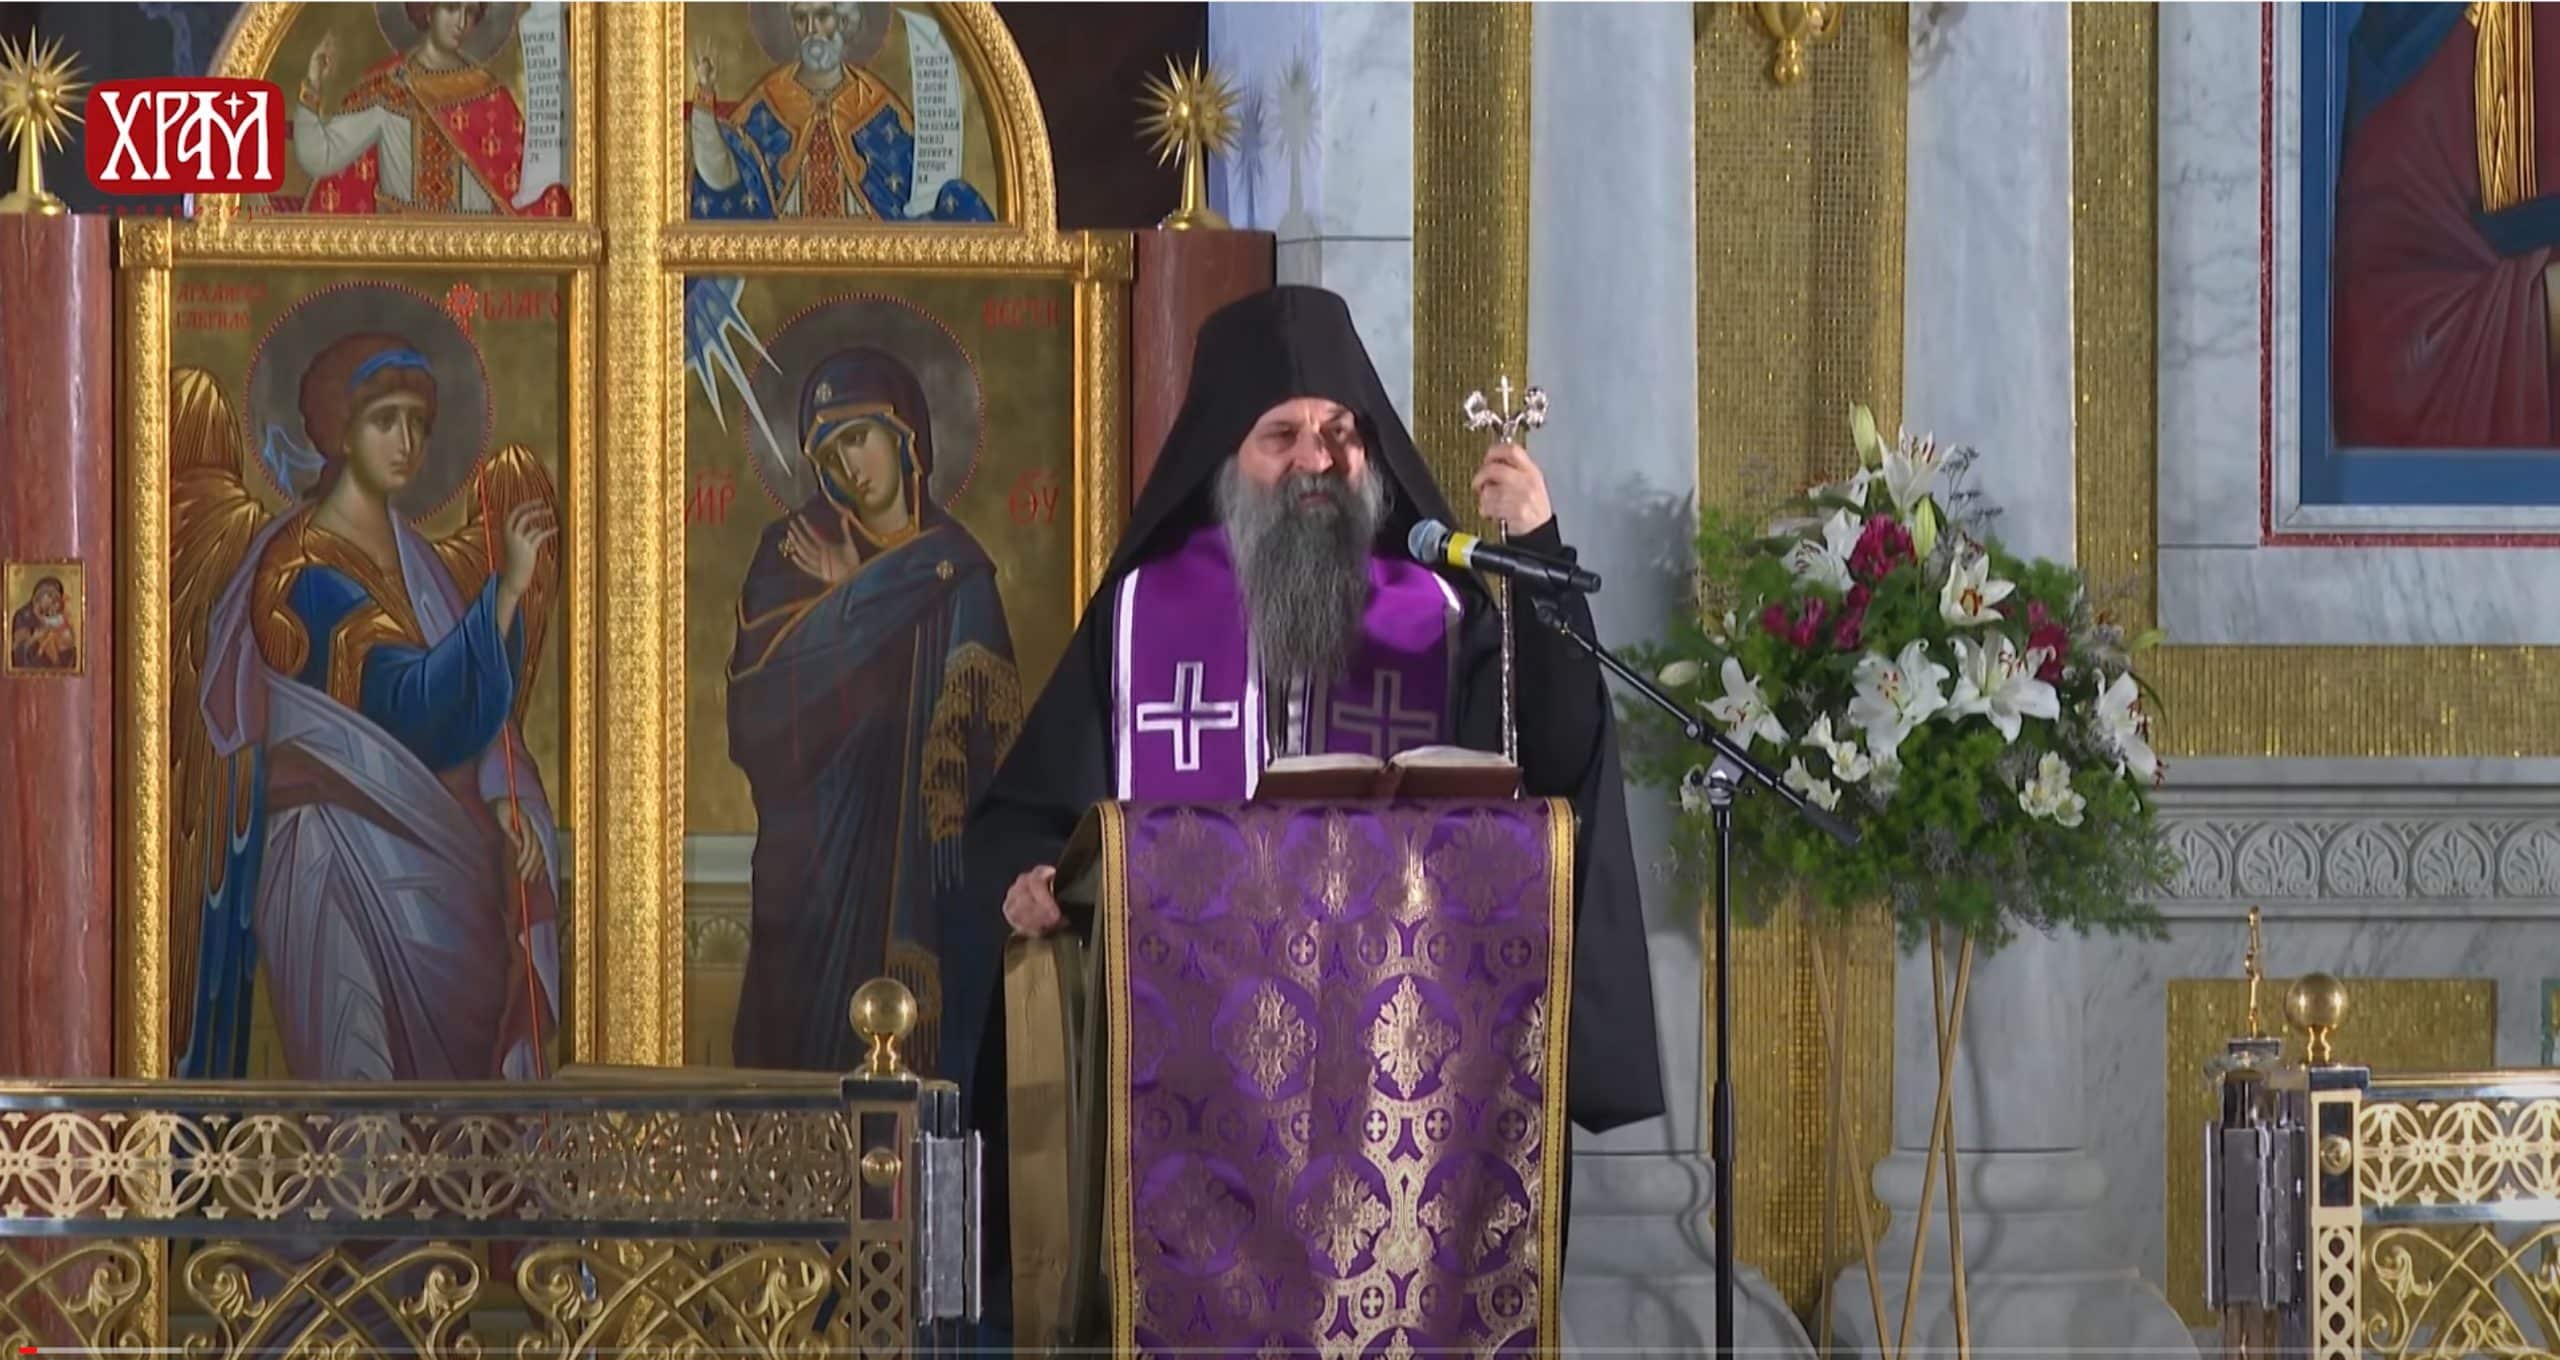 Le patriarche de Serbie au sujet de la situation en Ukraine : « Cette guerre menace d’apporter souffrance et divisions au monde entier et à l’Europe »